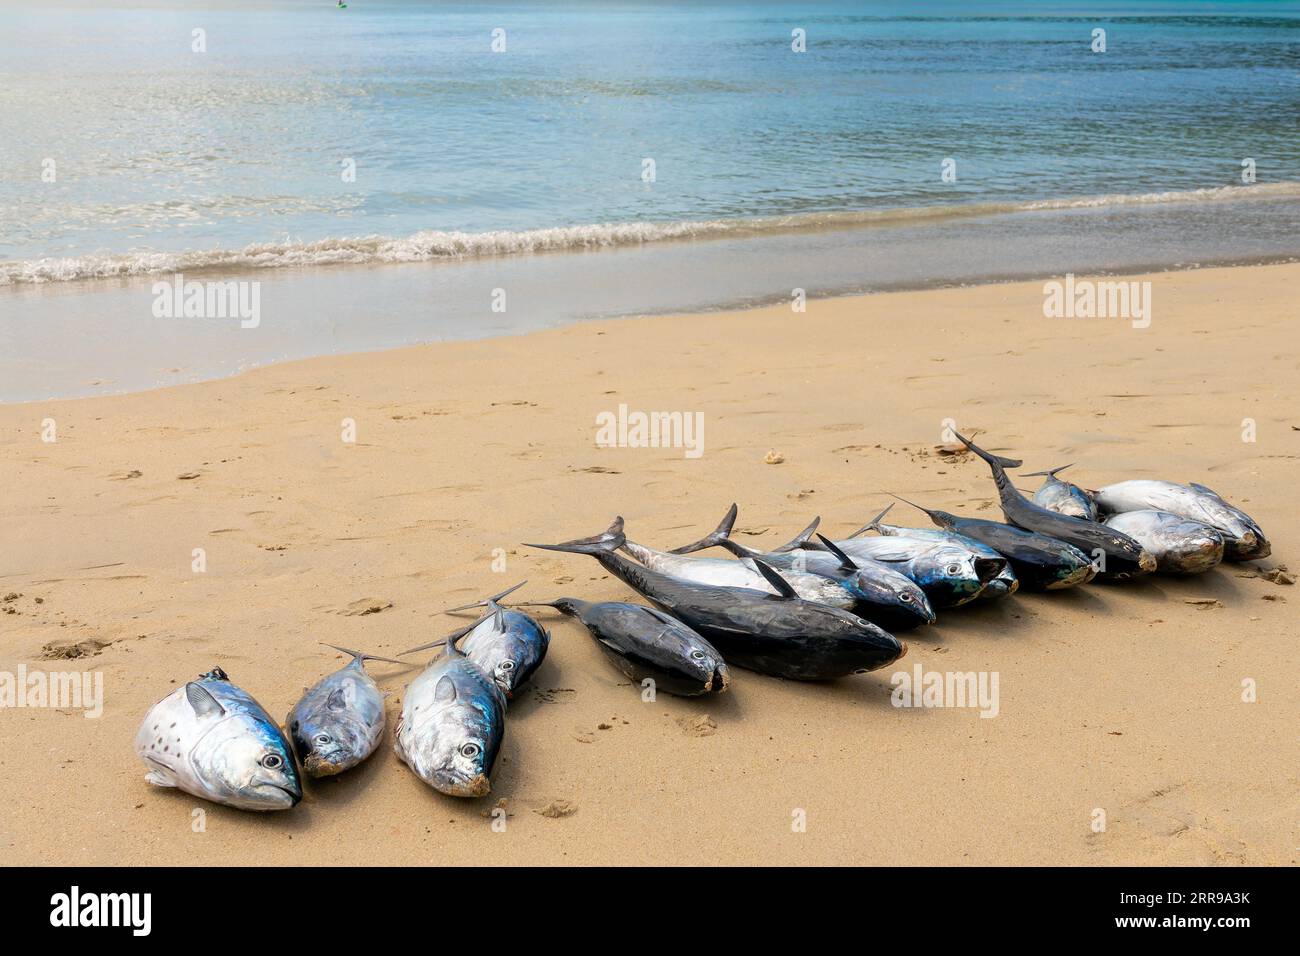 Viele frische große Fische, Fang des Tages auf dem Sand eines Strandes auf den Seychellen Inseln Stockfoto